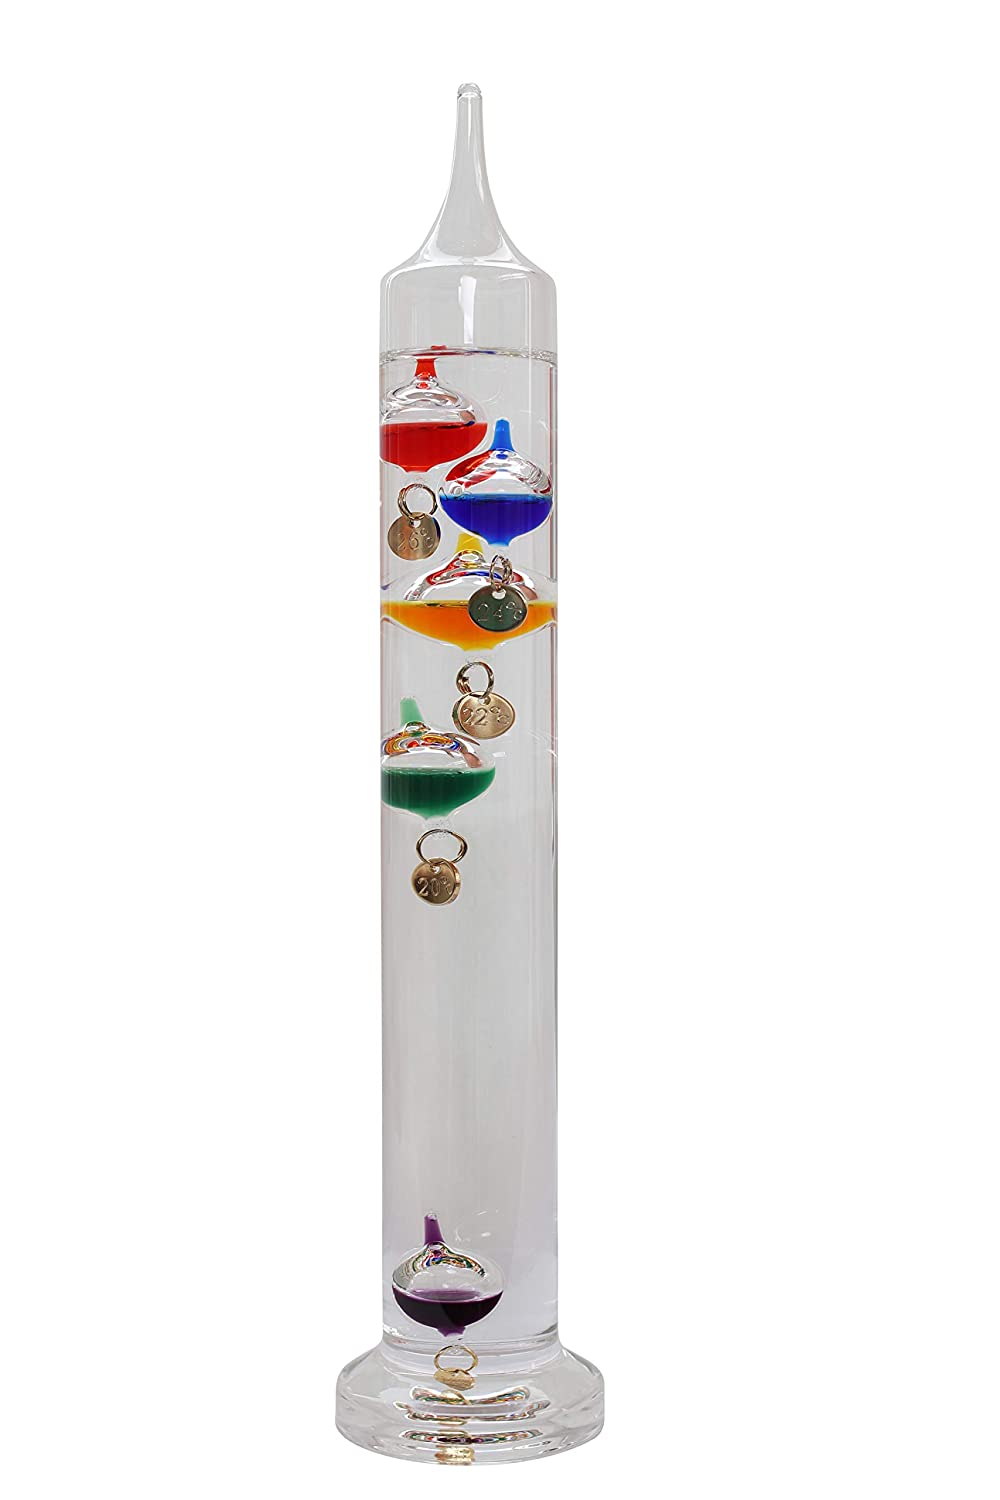 Termometro galileo con ampolle colorate – Arredamenti Navali